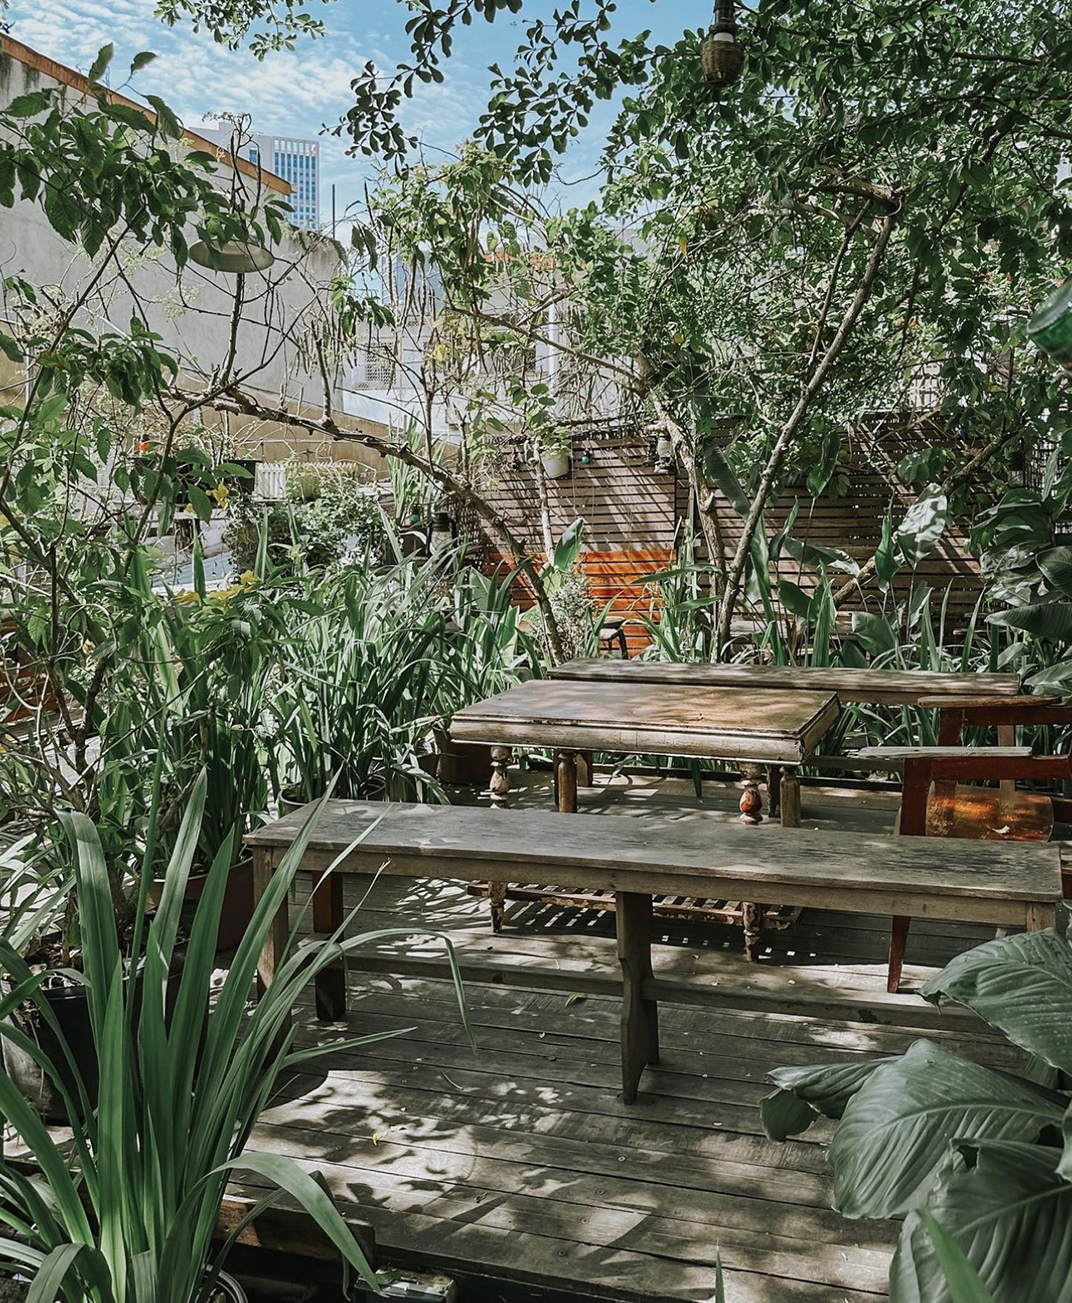 被绿植包围的咖啡馆空间 越南 北京 上海 成都 武汉 杭州 广州 澳门 logo设计 vi设计 空间设计